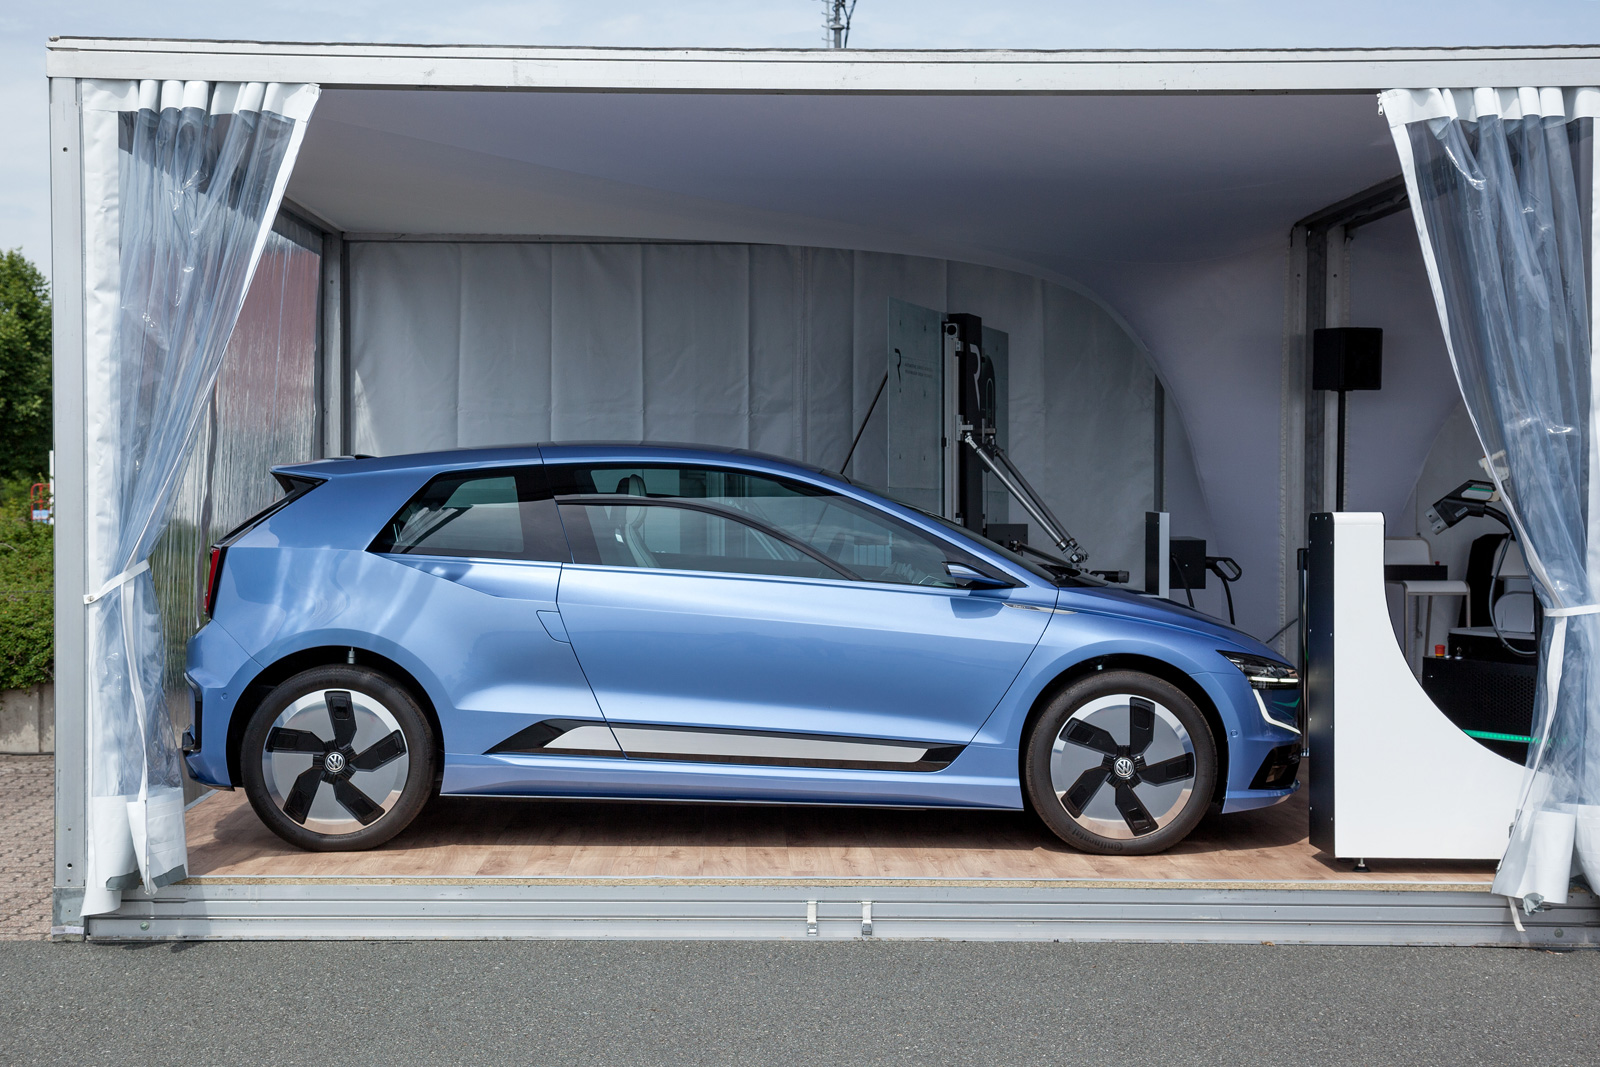 Berita, VW Gen E Concept samping: VW Golf 2019 Akan Lebih Gemuk, Namun Mesin Lebih Efisien